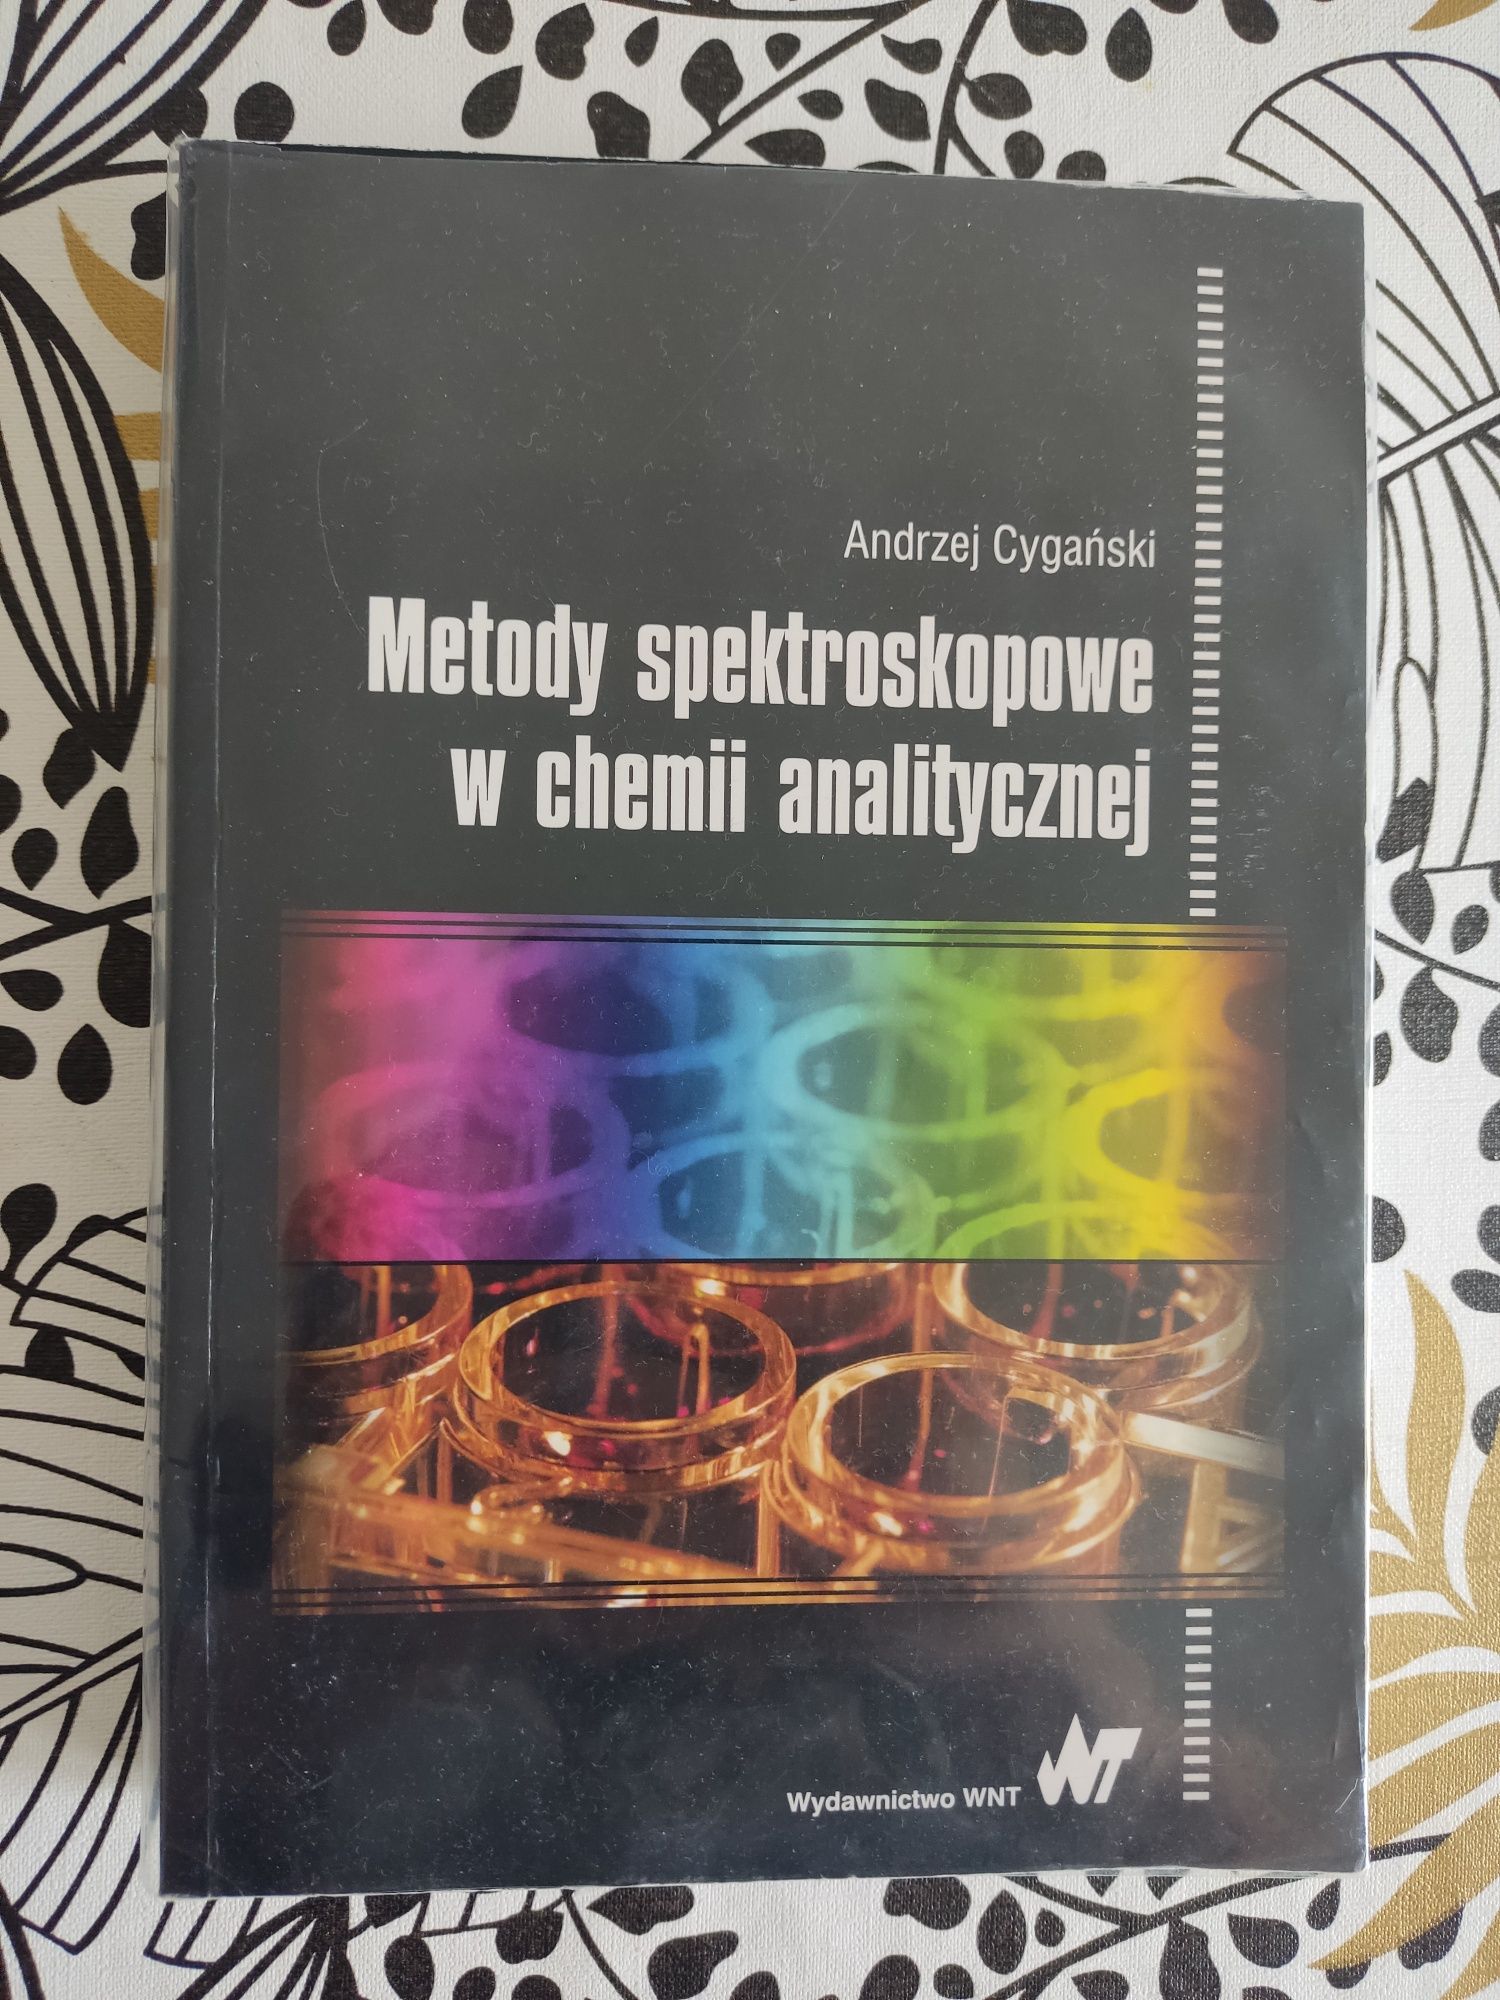 Andrzej cygański metody spektroskopowe w chemii analitycznej